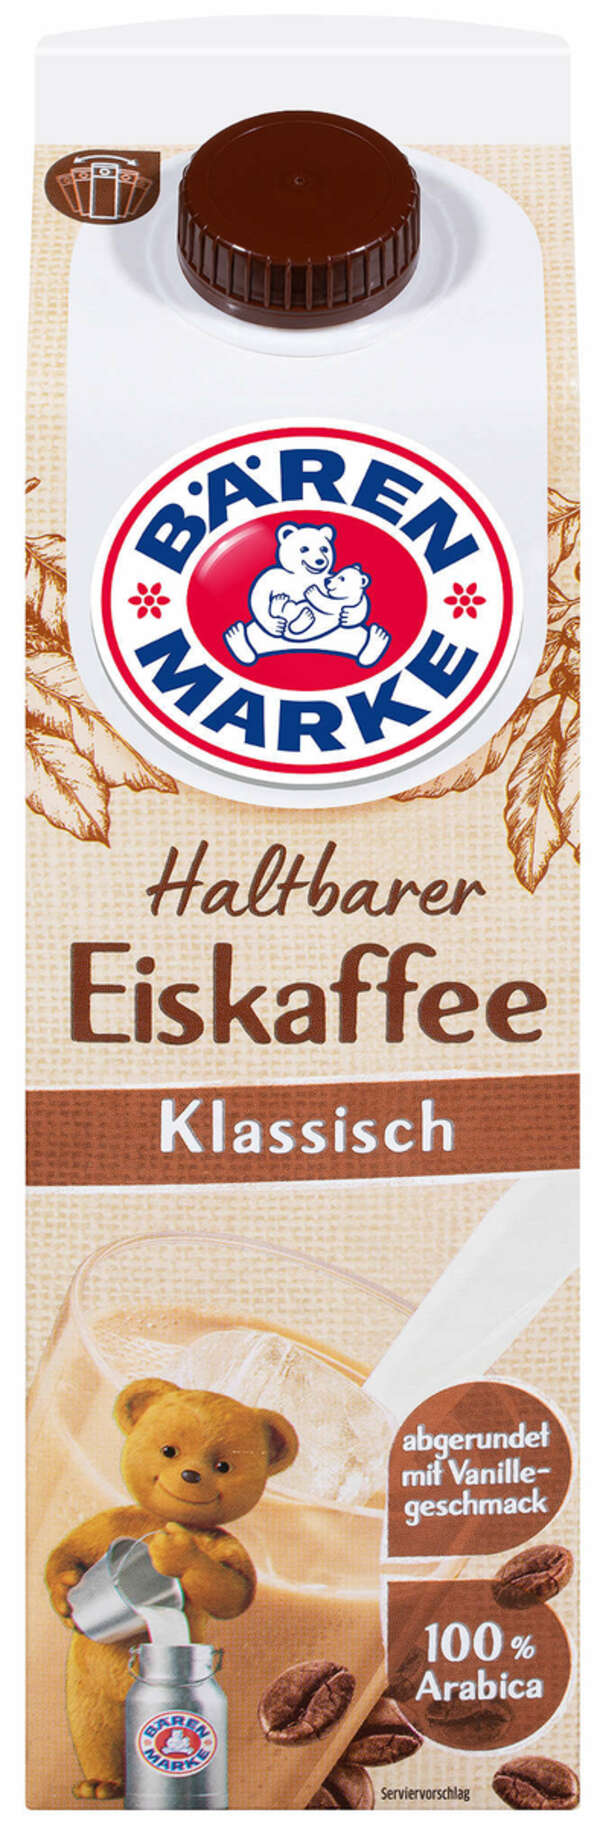 Bild 1 von BÄRENMARKE Haltbarer Eiskaffee